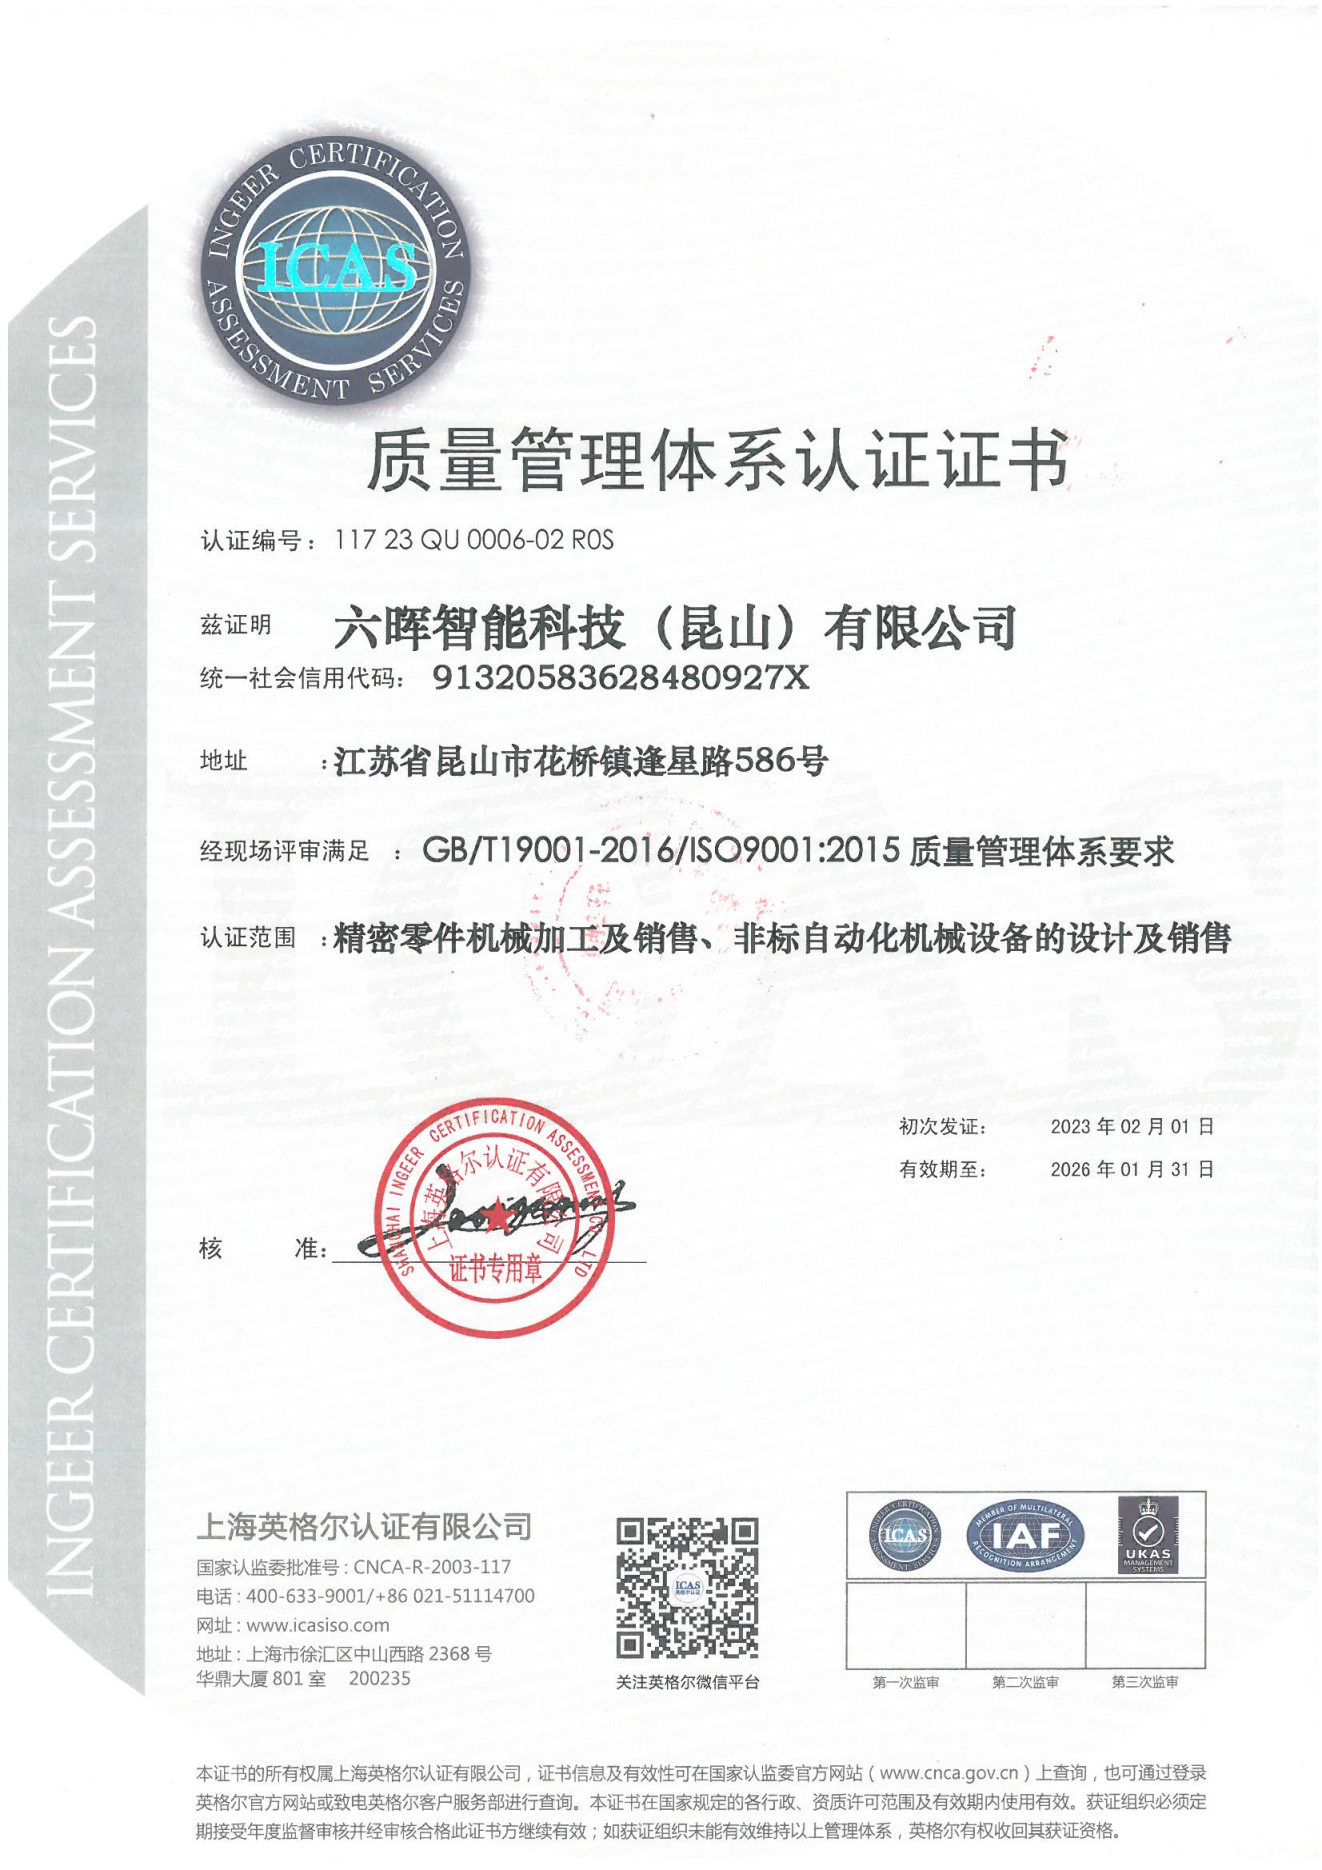 六晖智能 ISO9001中英文证书20230201~20260131_00.png